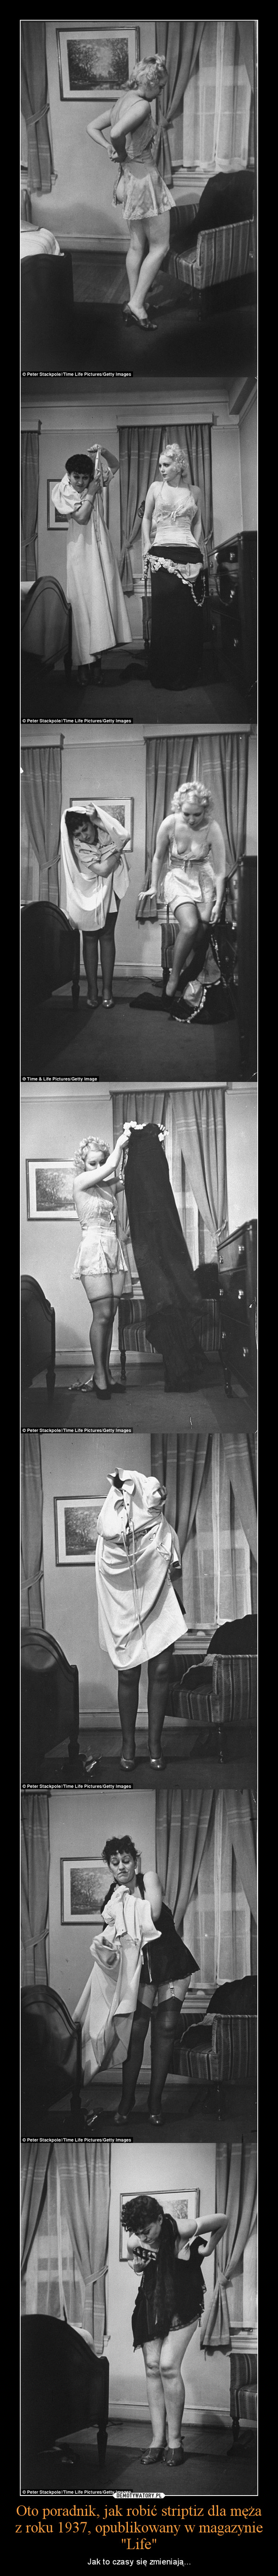 Oto poradnik, jak robić striptiz dla męża z roku 1937, opublikowany w magazynie "Life" – Jak to czasy się zmieniają... 